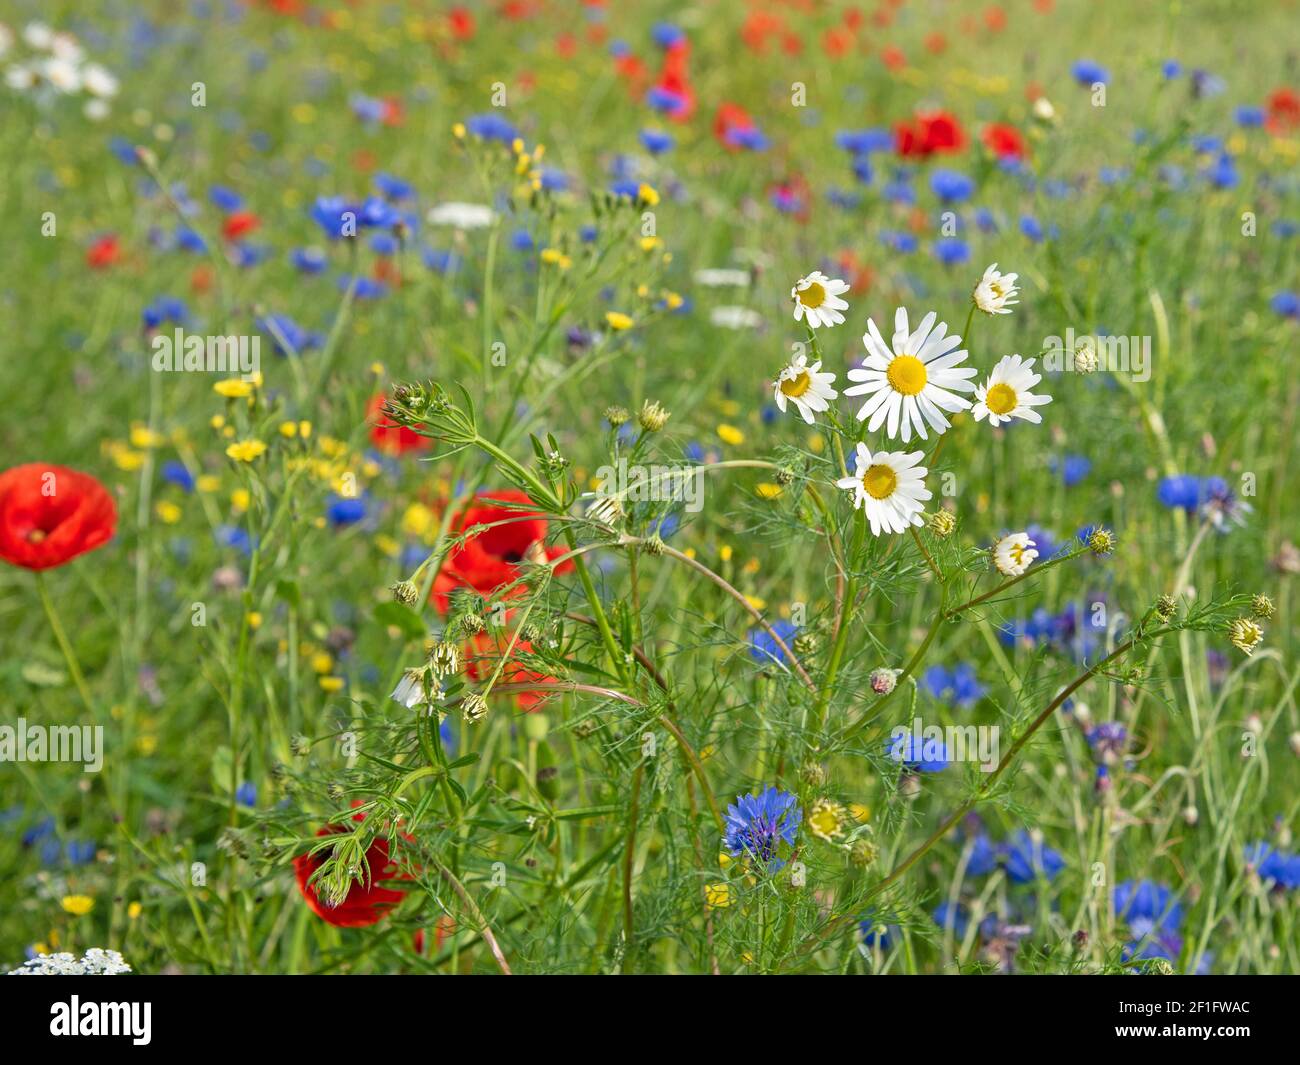 Blooming wildflowers meadow in summer Stock Photo